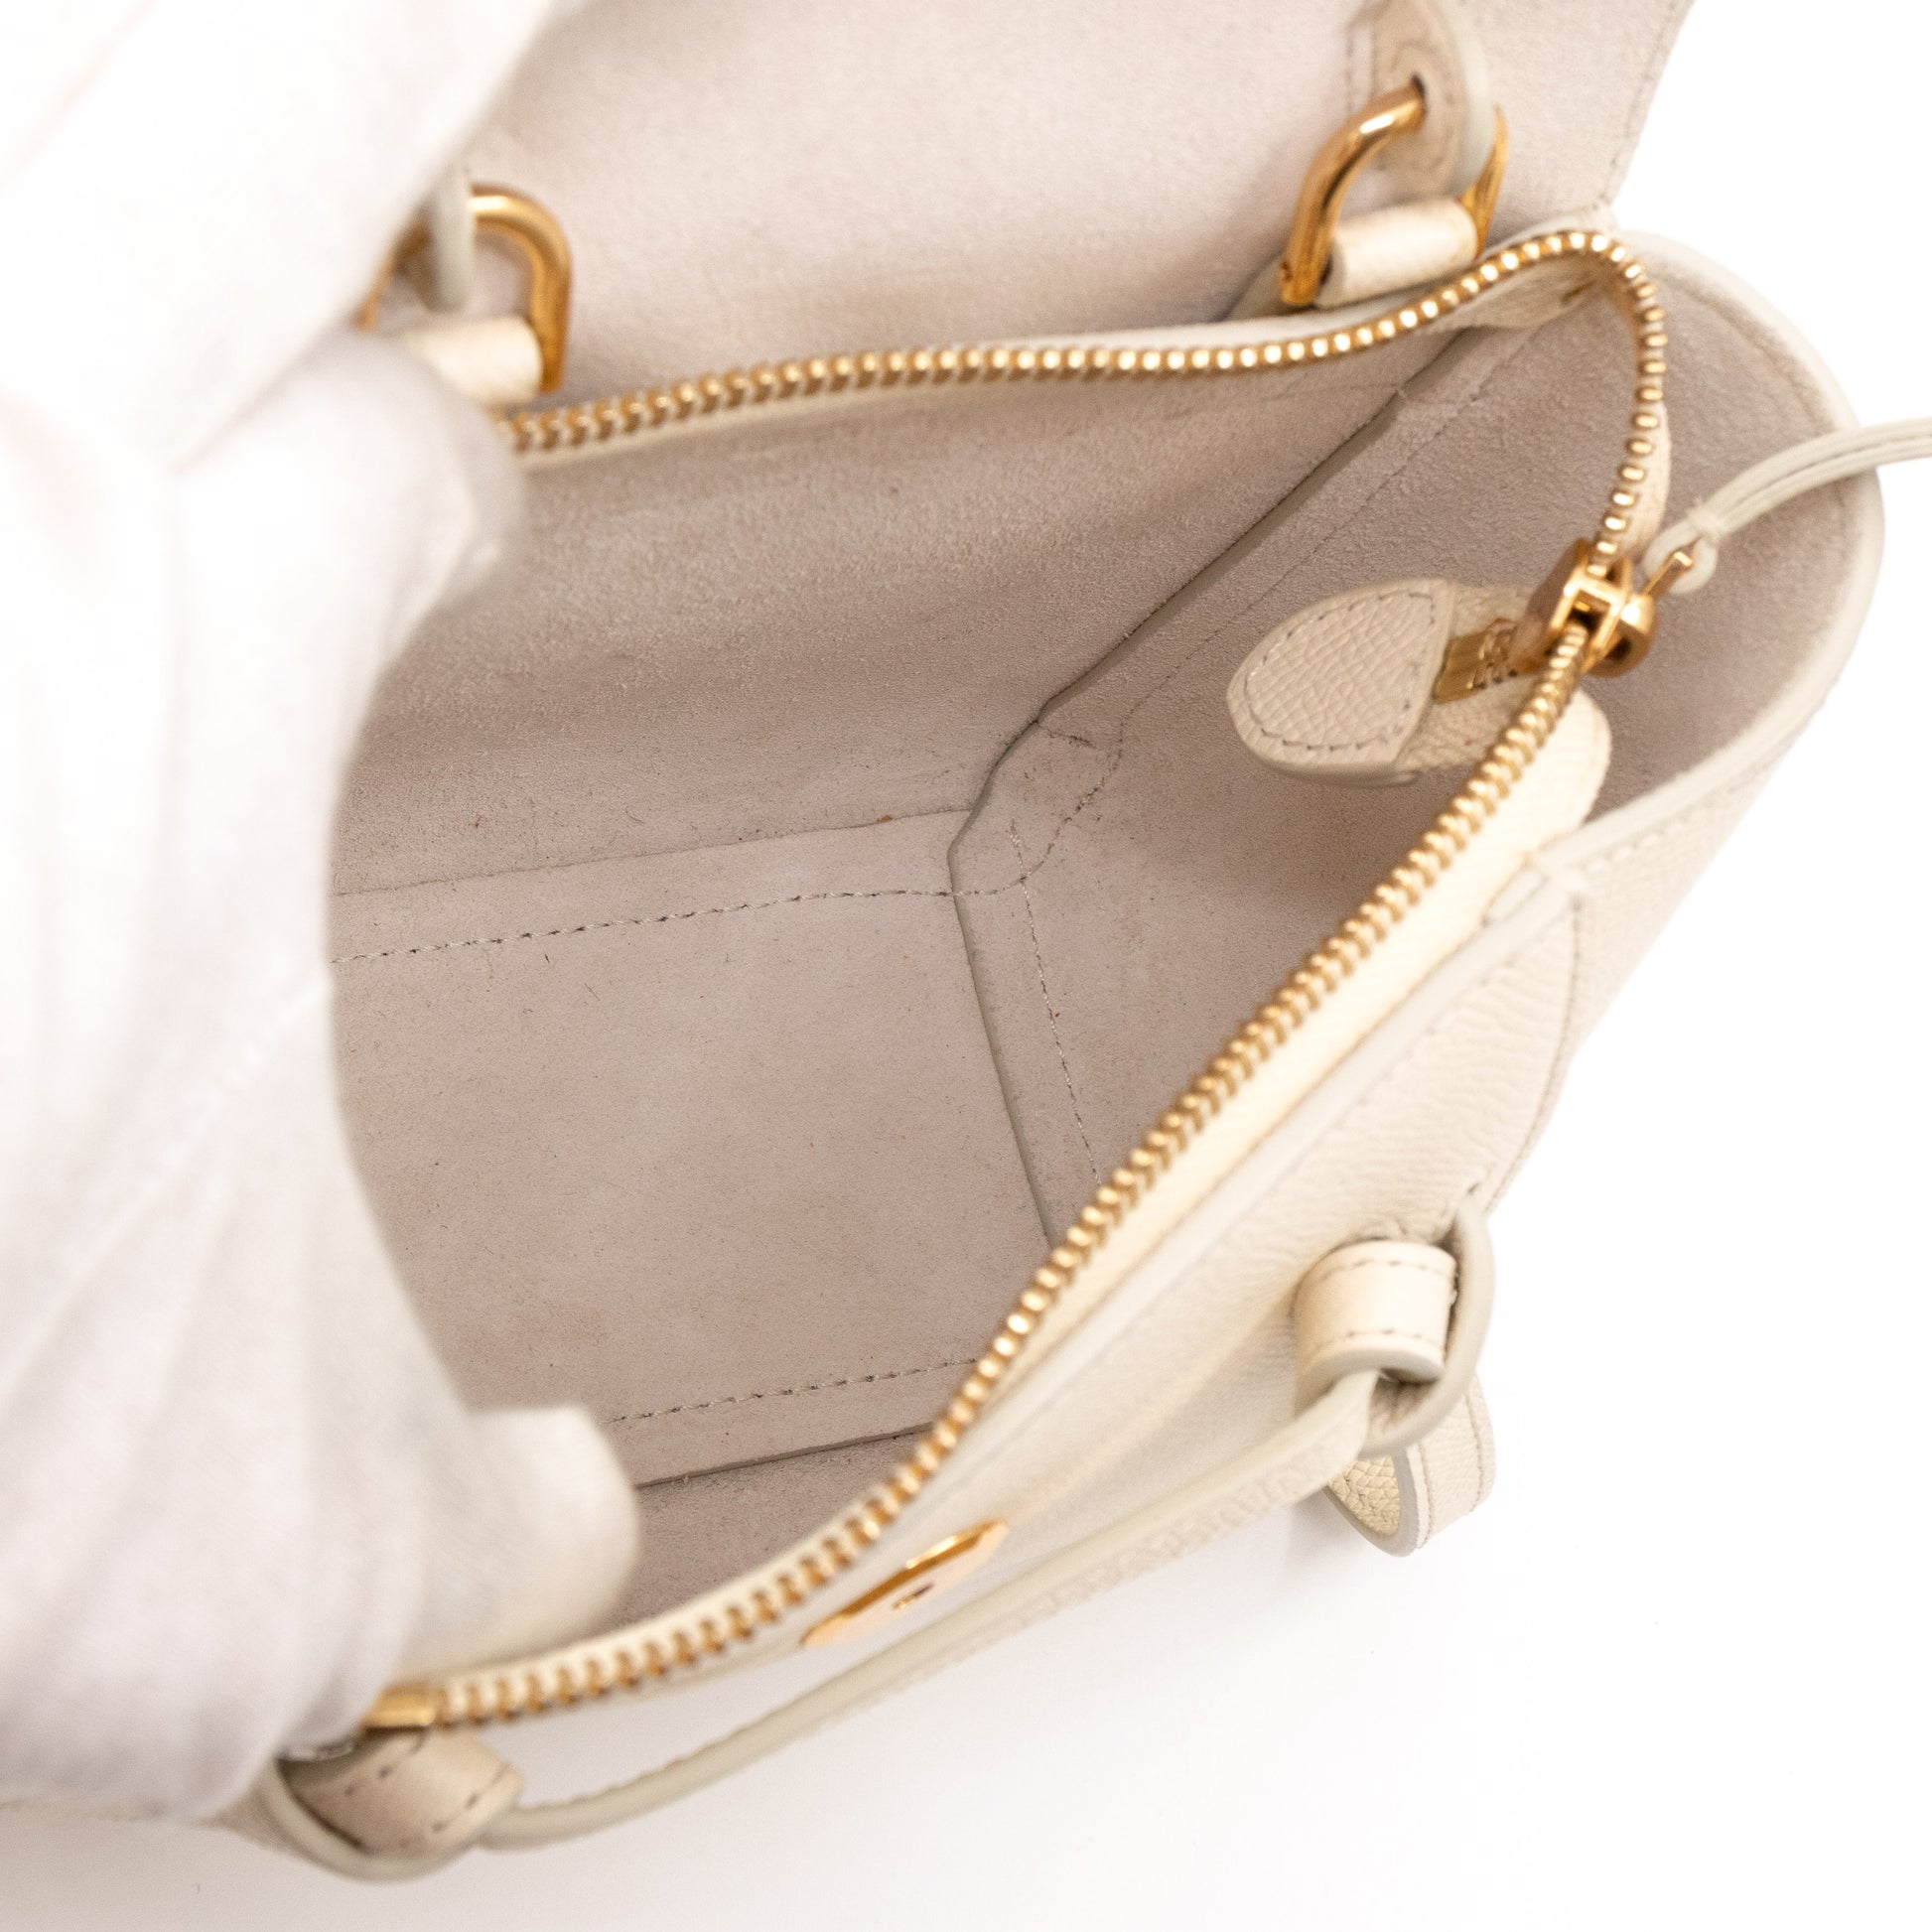 Like New Condition Celine Pico Belt Bag  Celine pico belt bag outfit, Bags,  Belt bag outfit